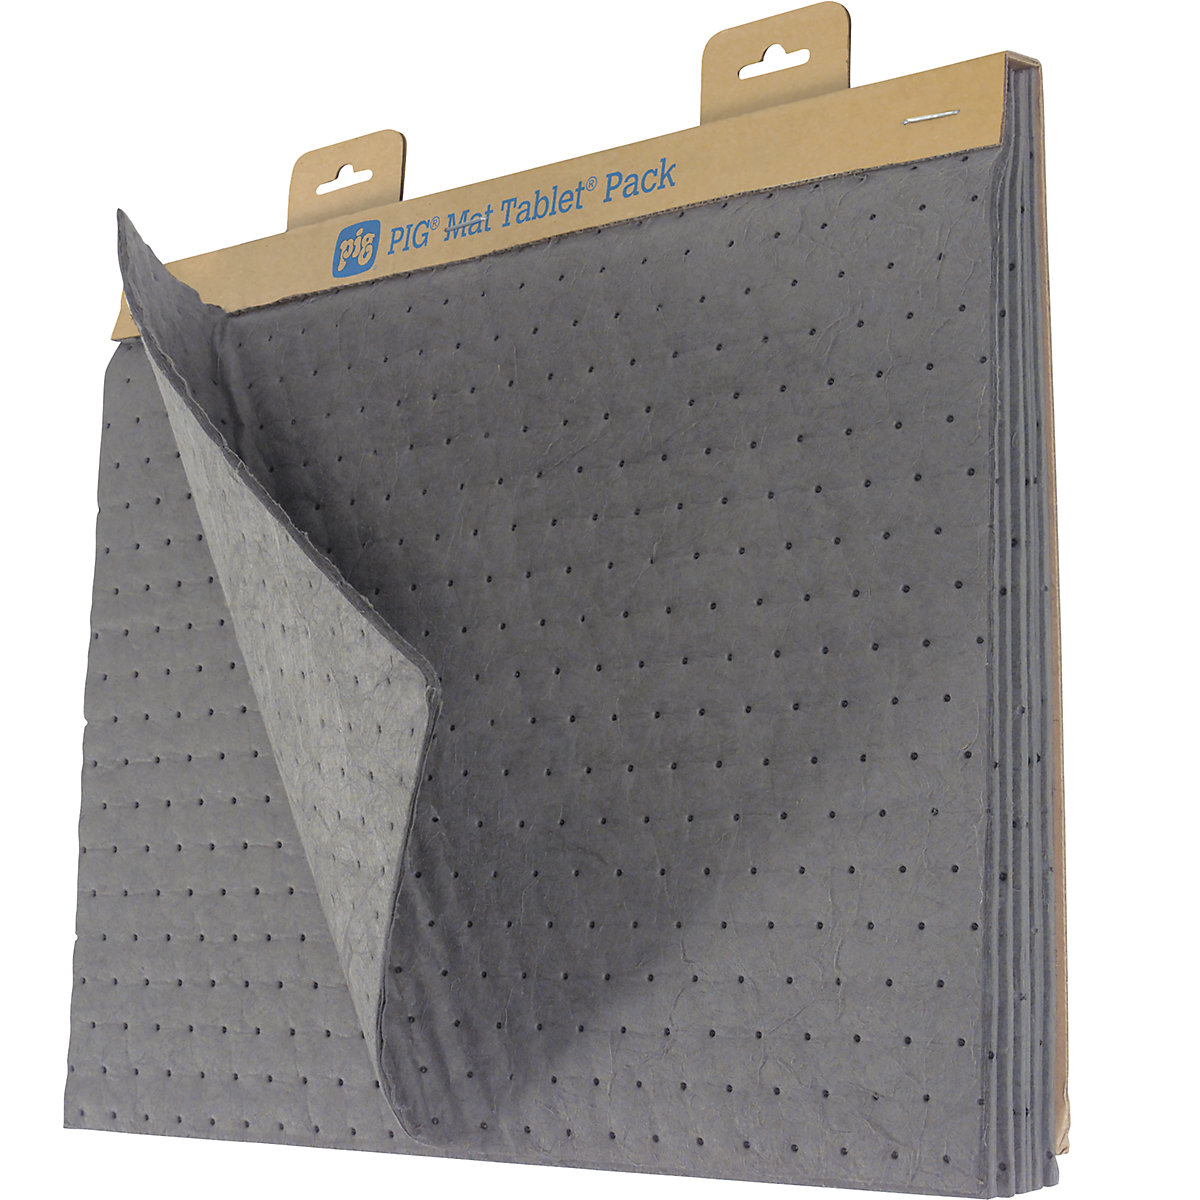 MAT TABLET® pack - universal absorbent sheet dispenser - PIG